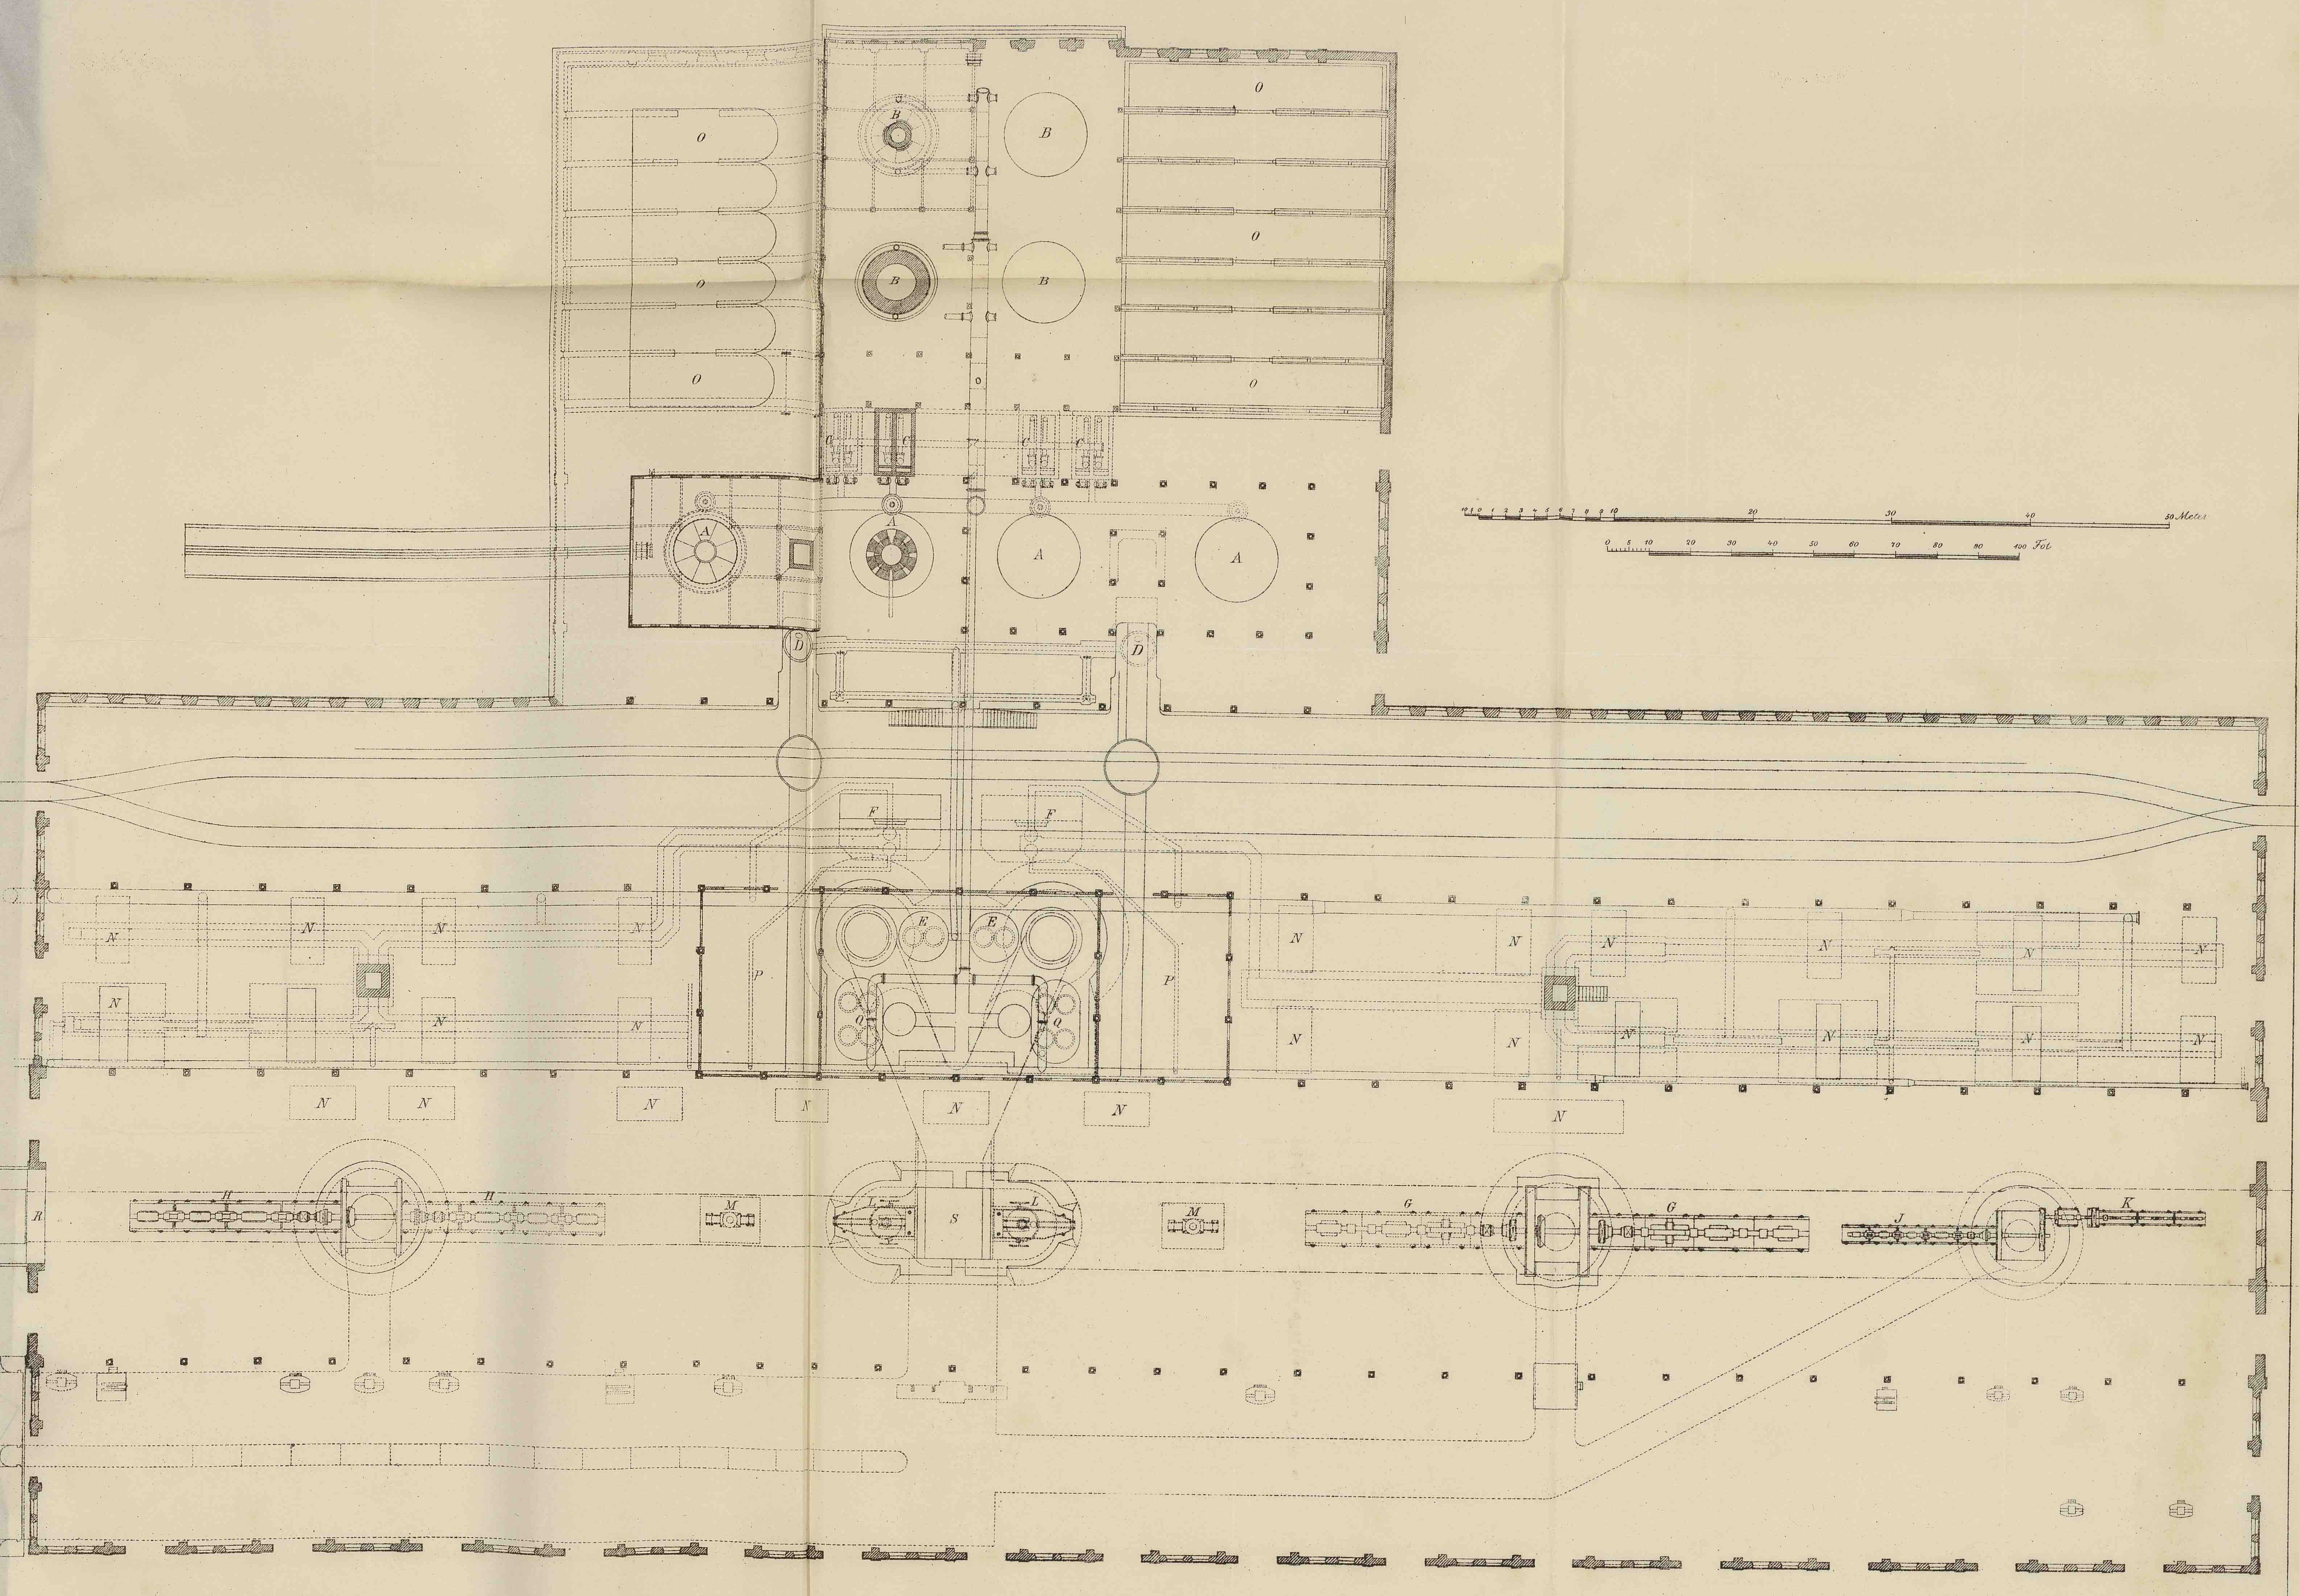 Plan de l’usine de Domnarfvet, Léon Janet, 1883, J 1883 (717)